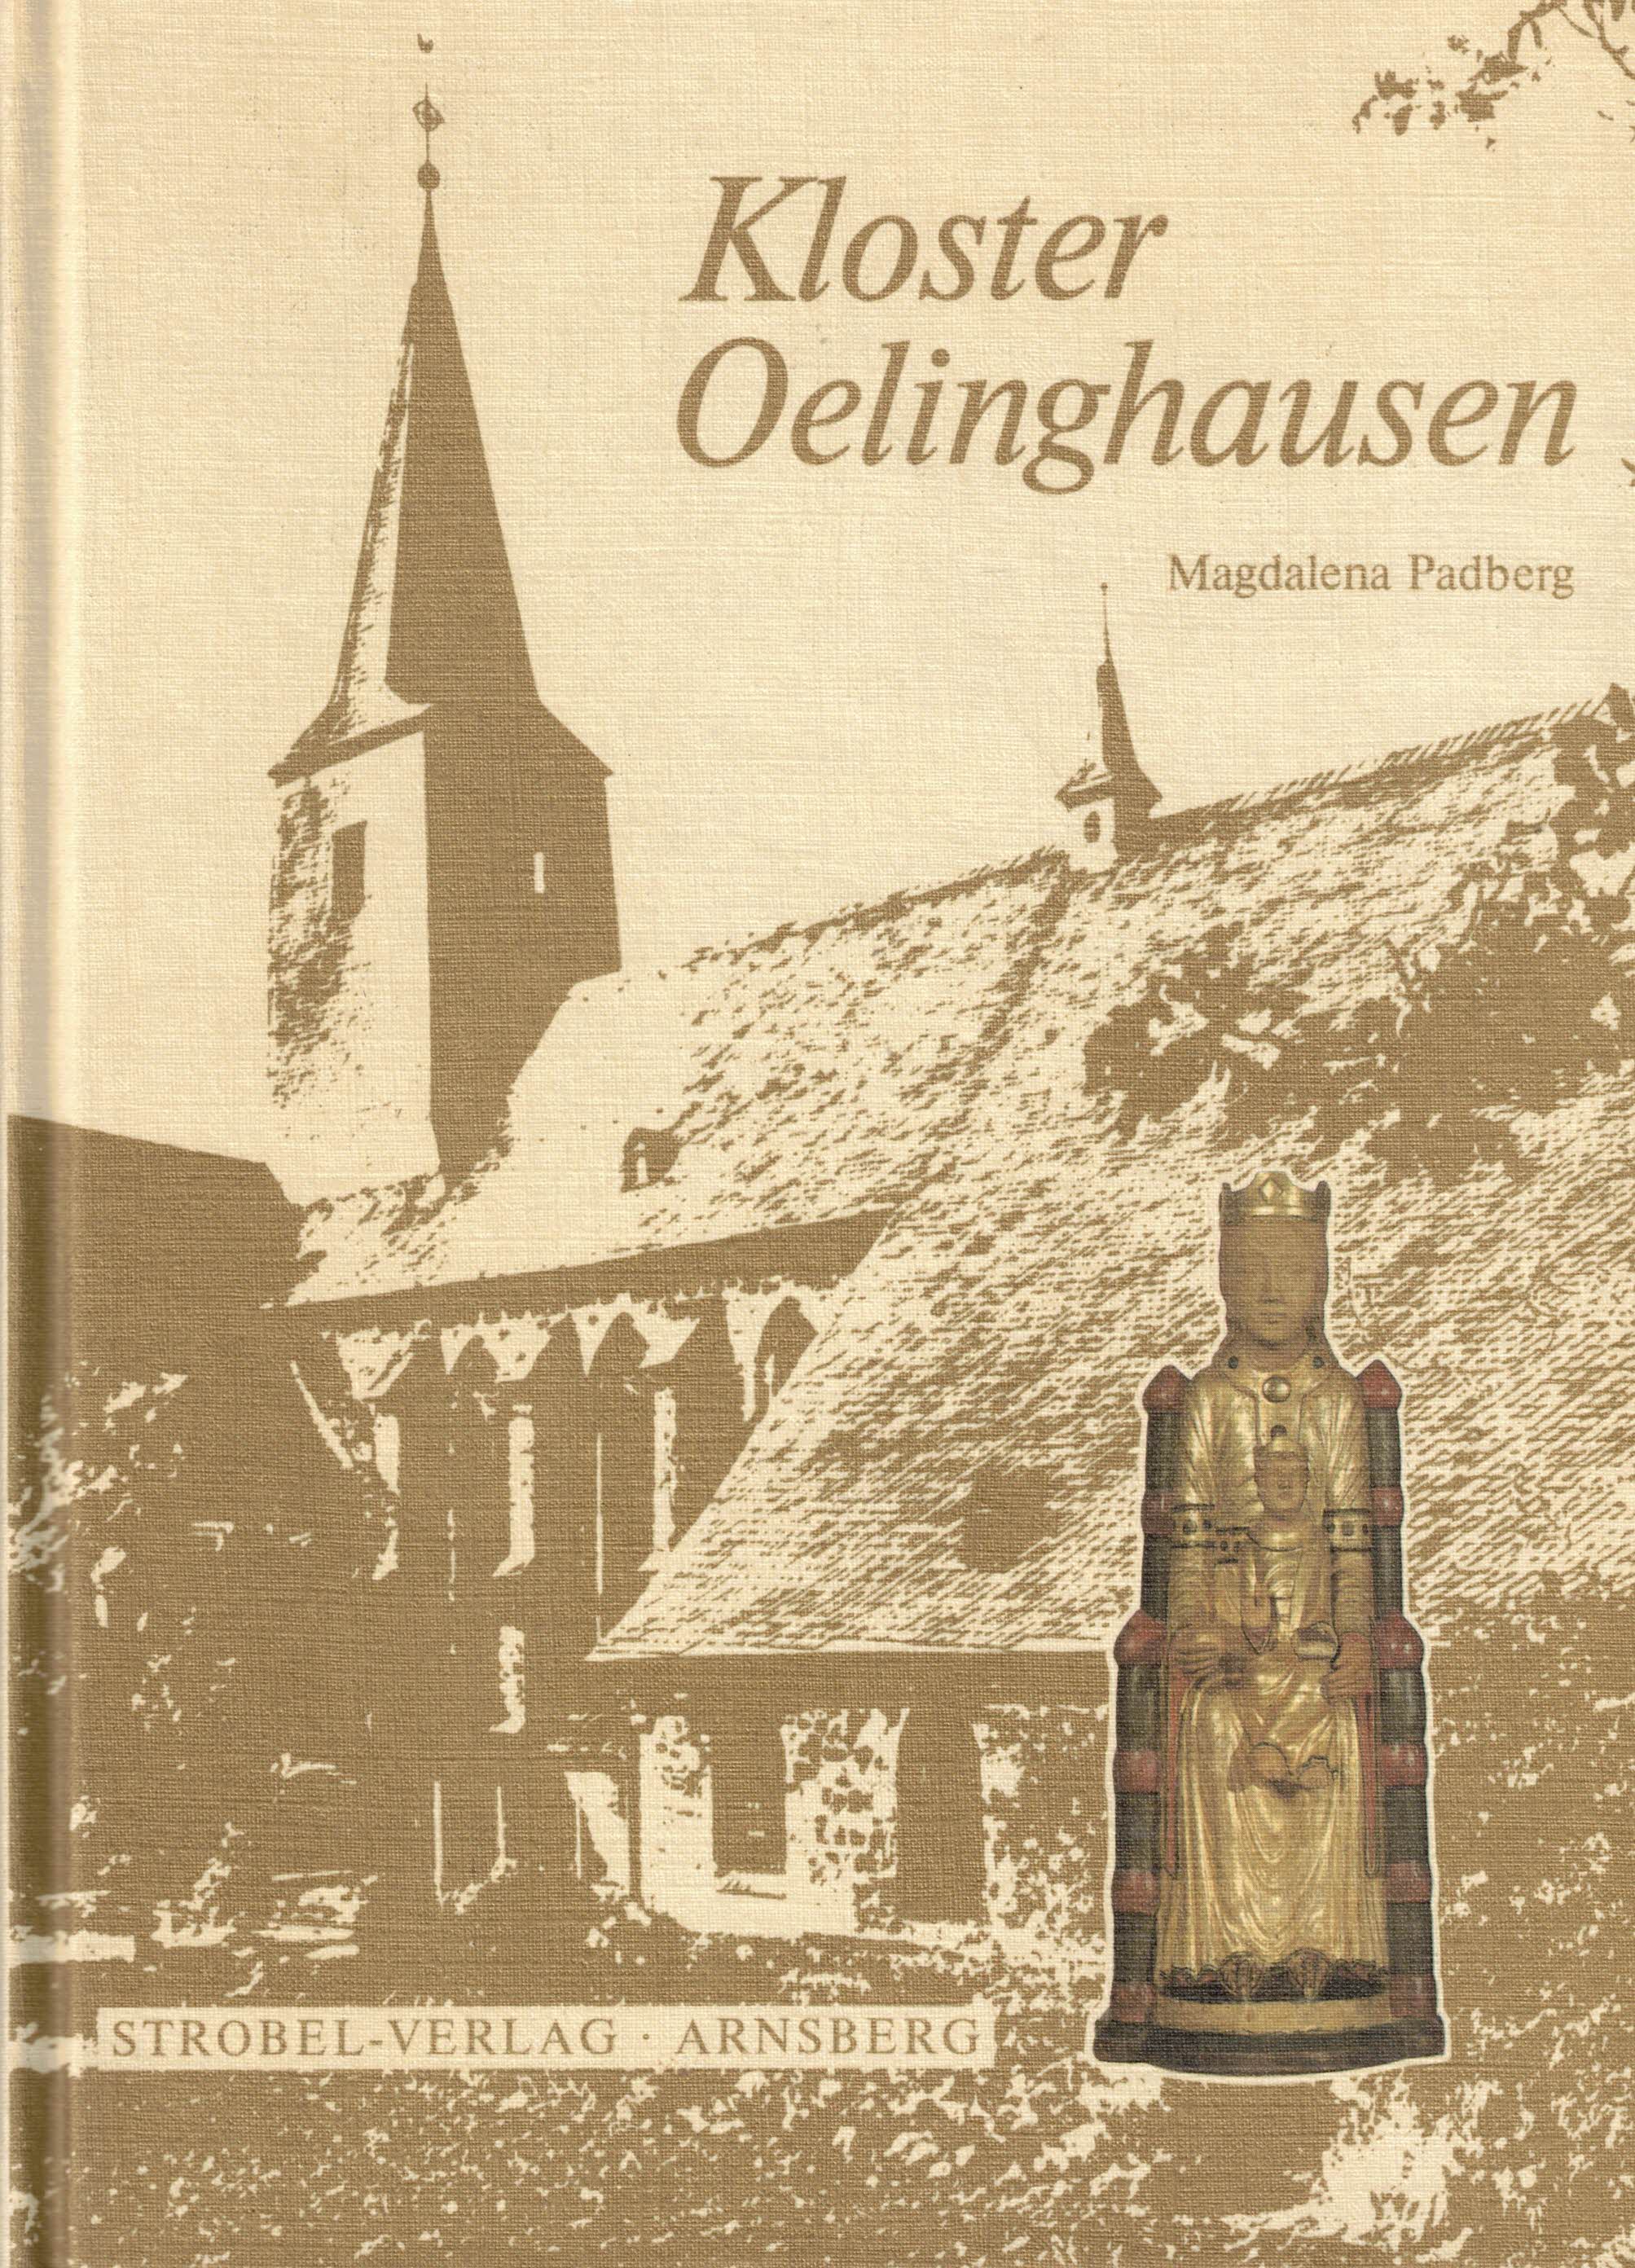 Kloster Oelinghausen. St. Peter: Pfarr-Kloster-Wallfahrtskirche - Padberg, Magdalena